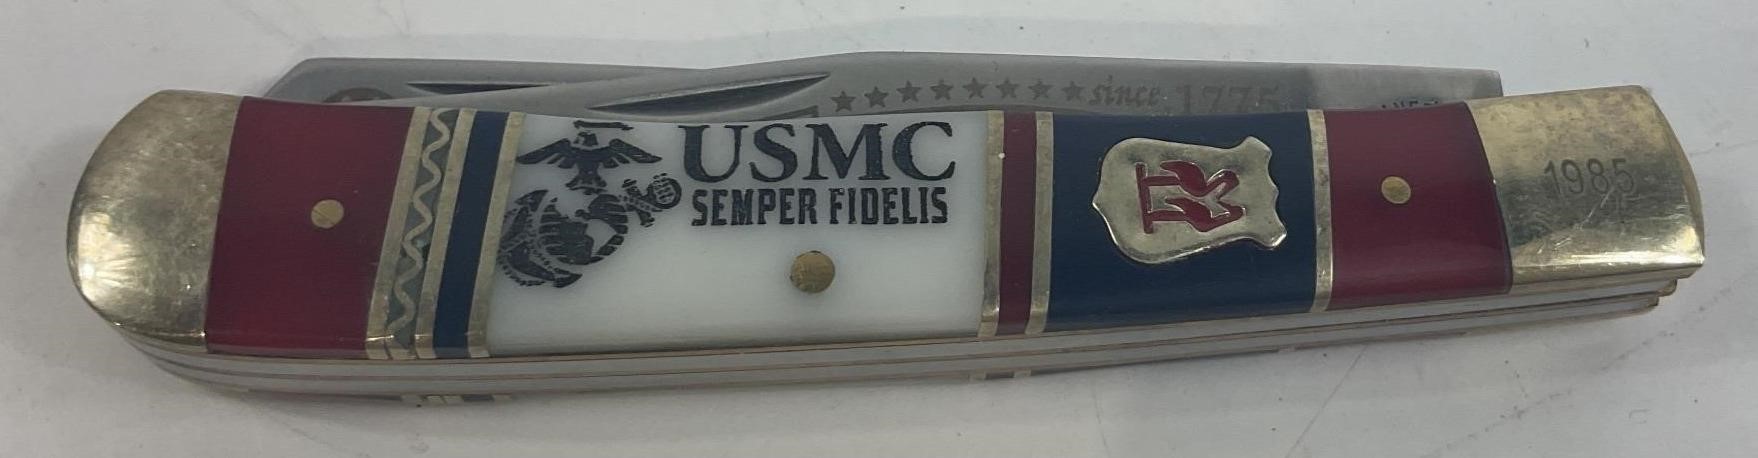 USMC Semper Fidelis 1985